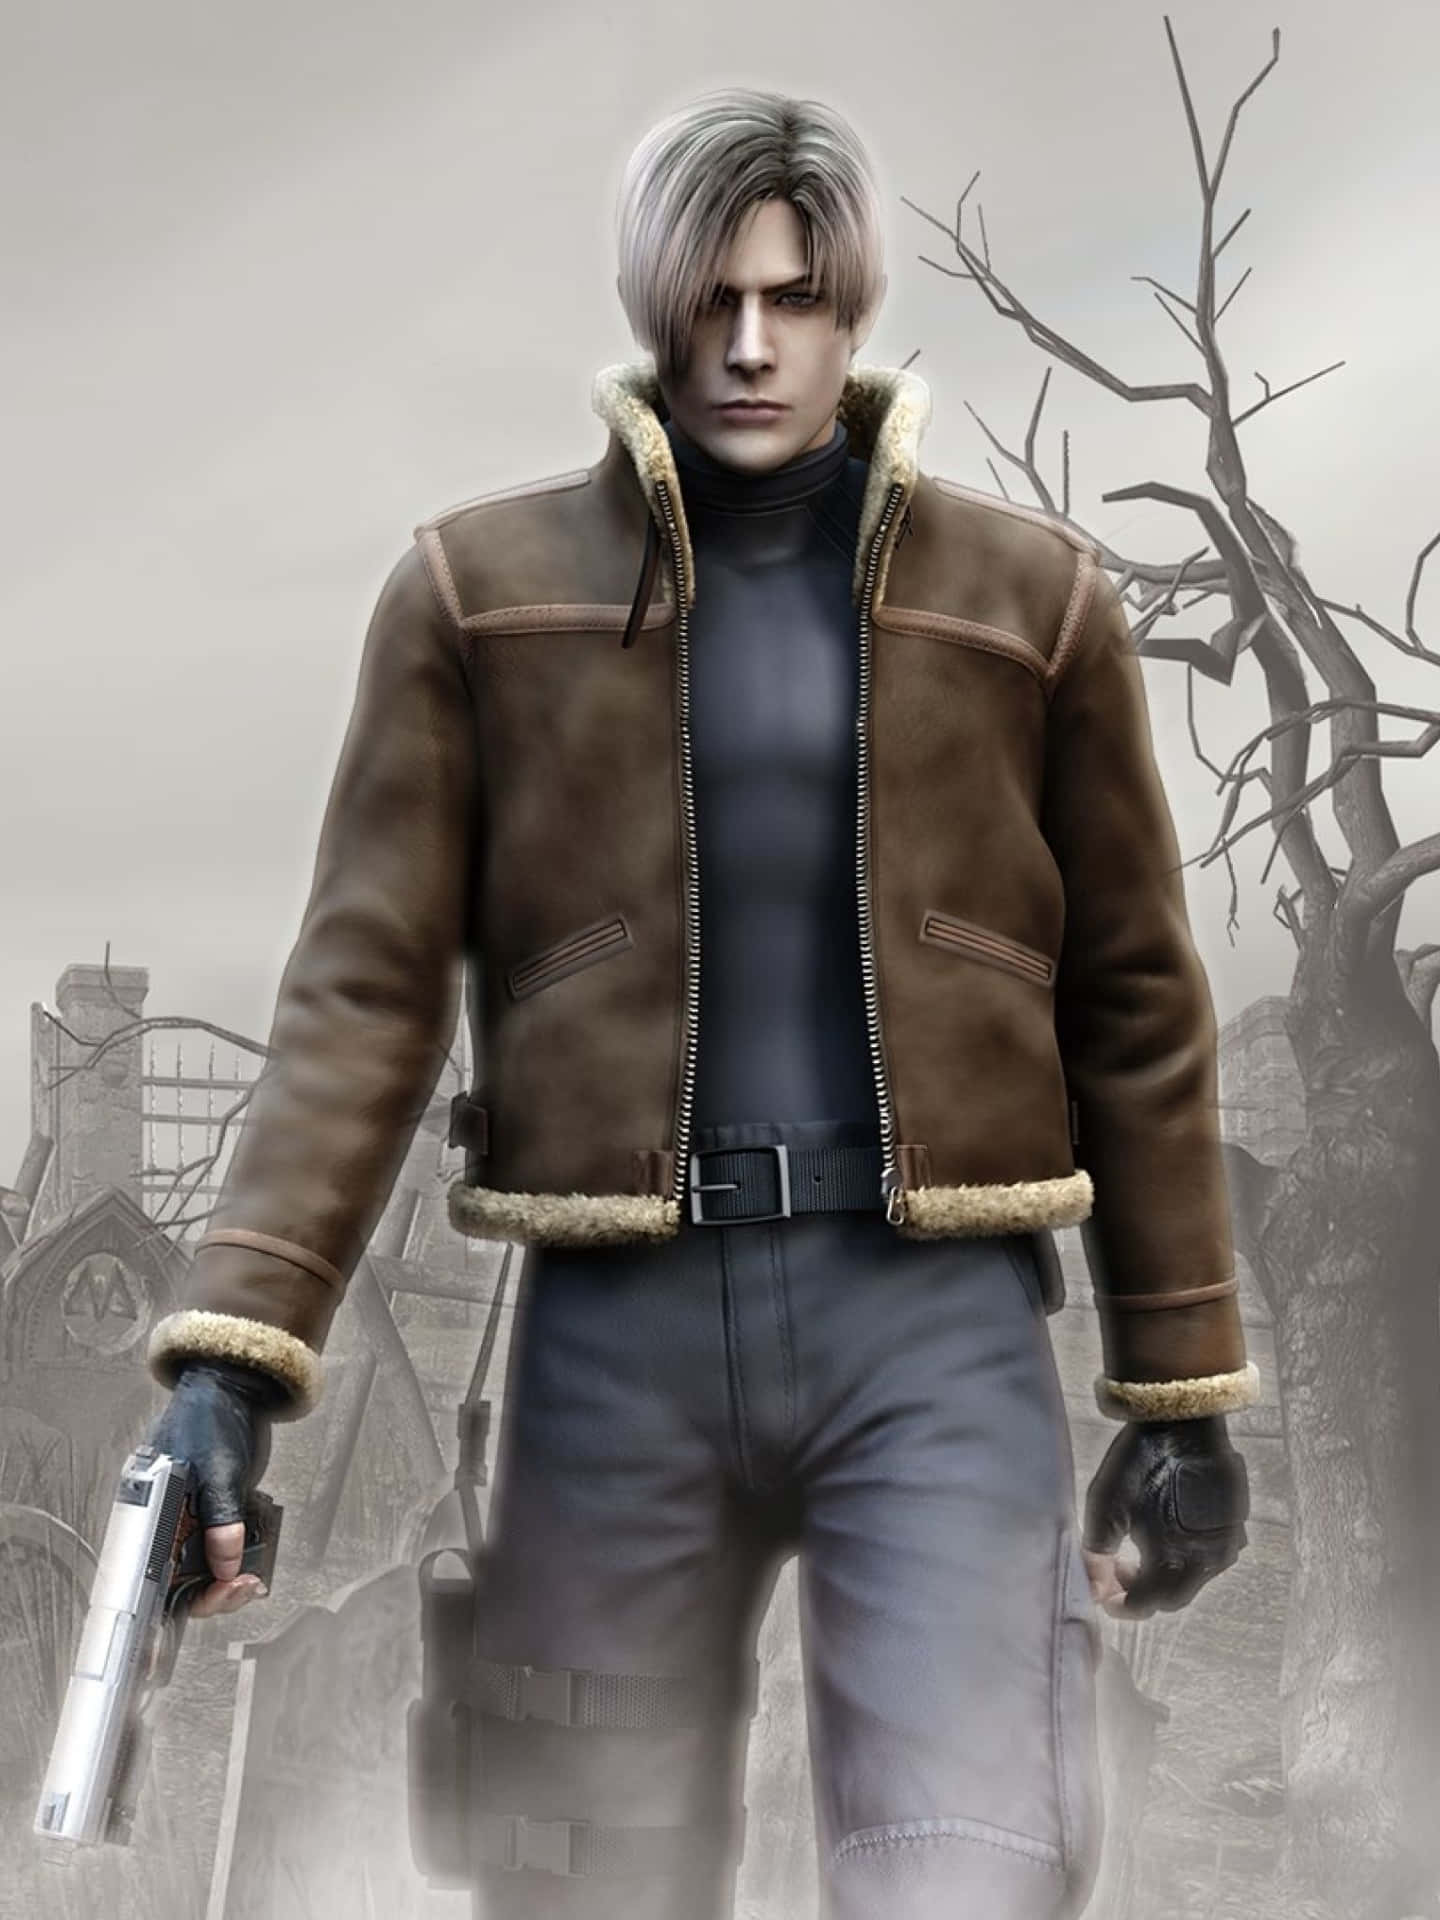 Uppleven Ny Sorts Skräck Med Resident Evil 2 På Din Datorskärm Eller Mobil. Wallpaper